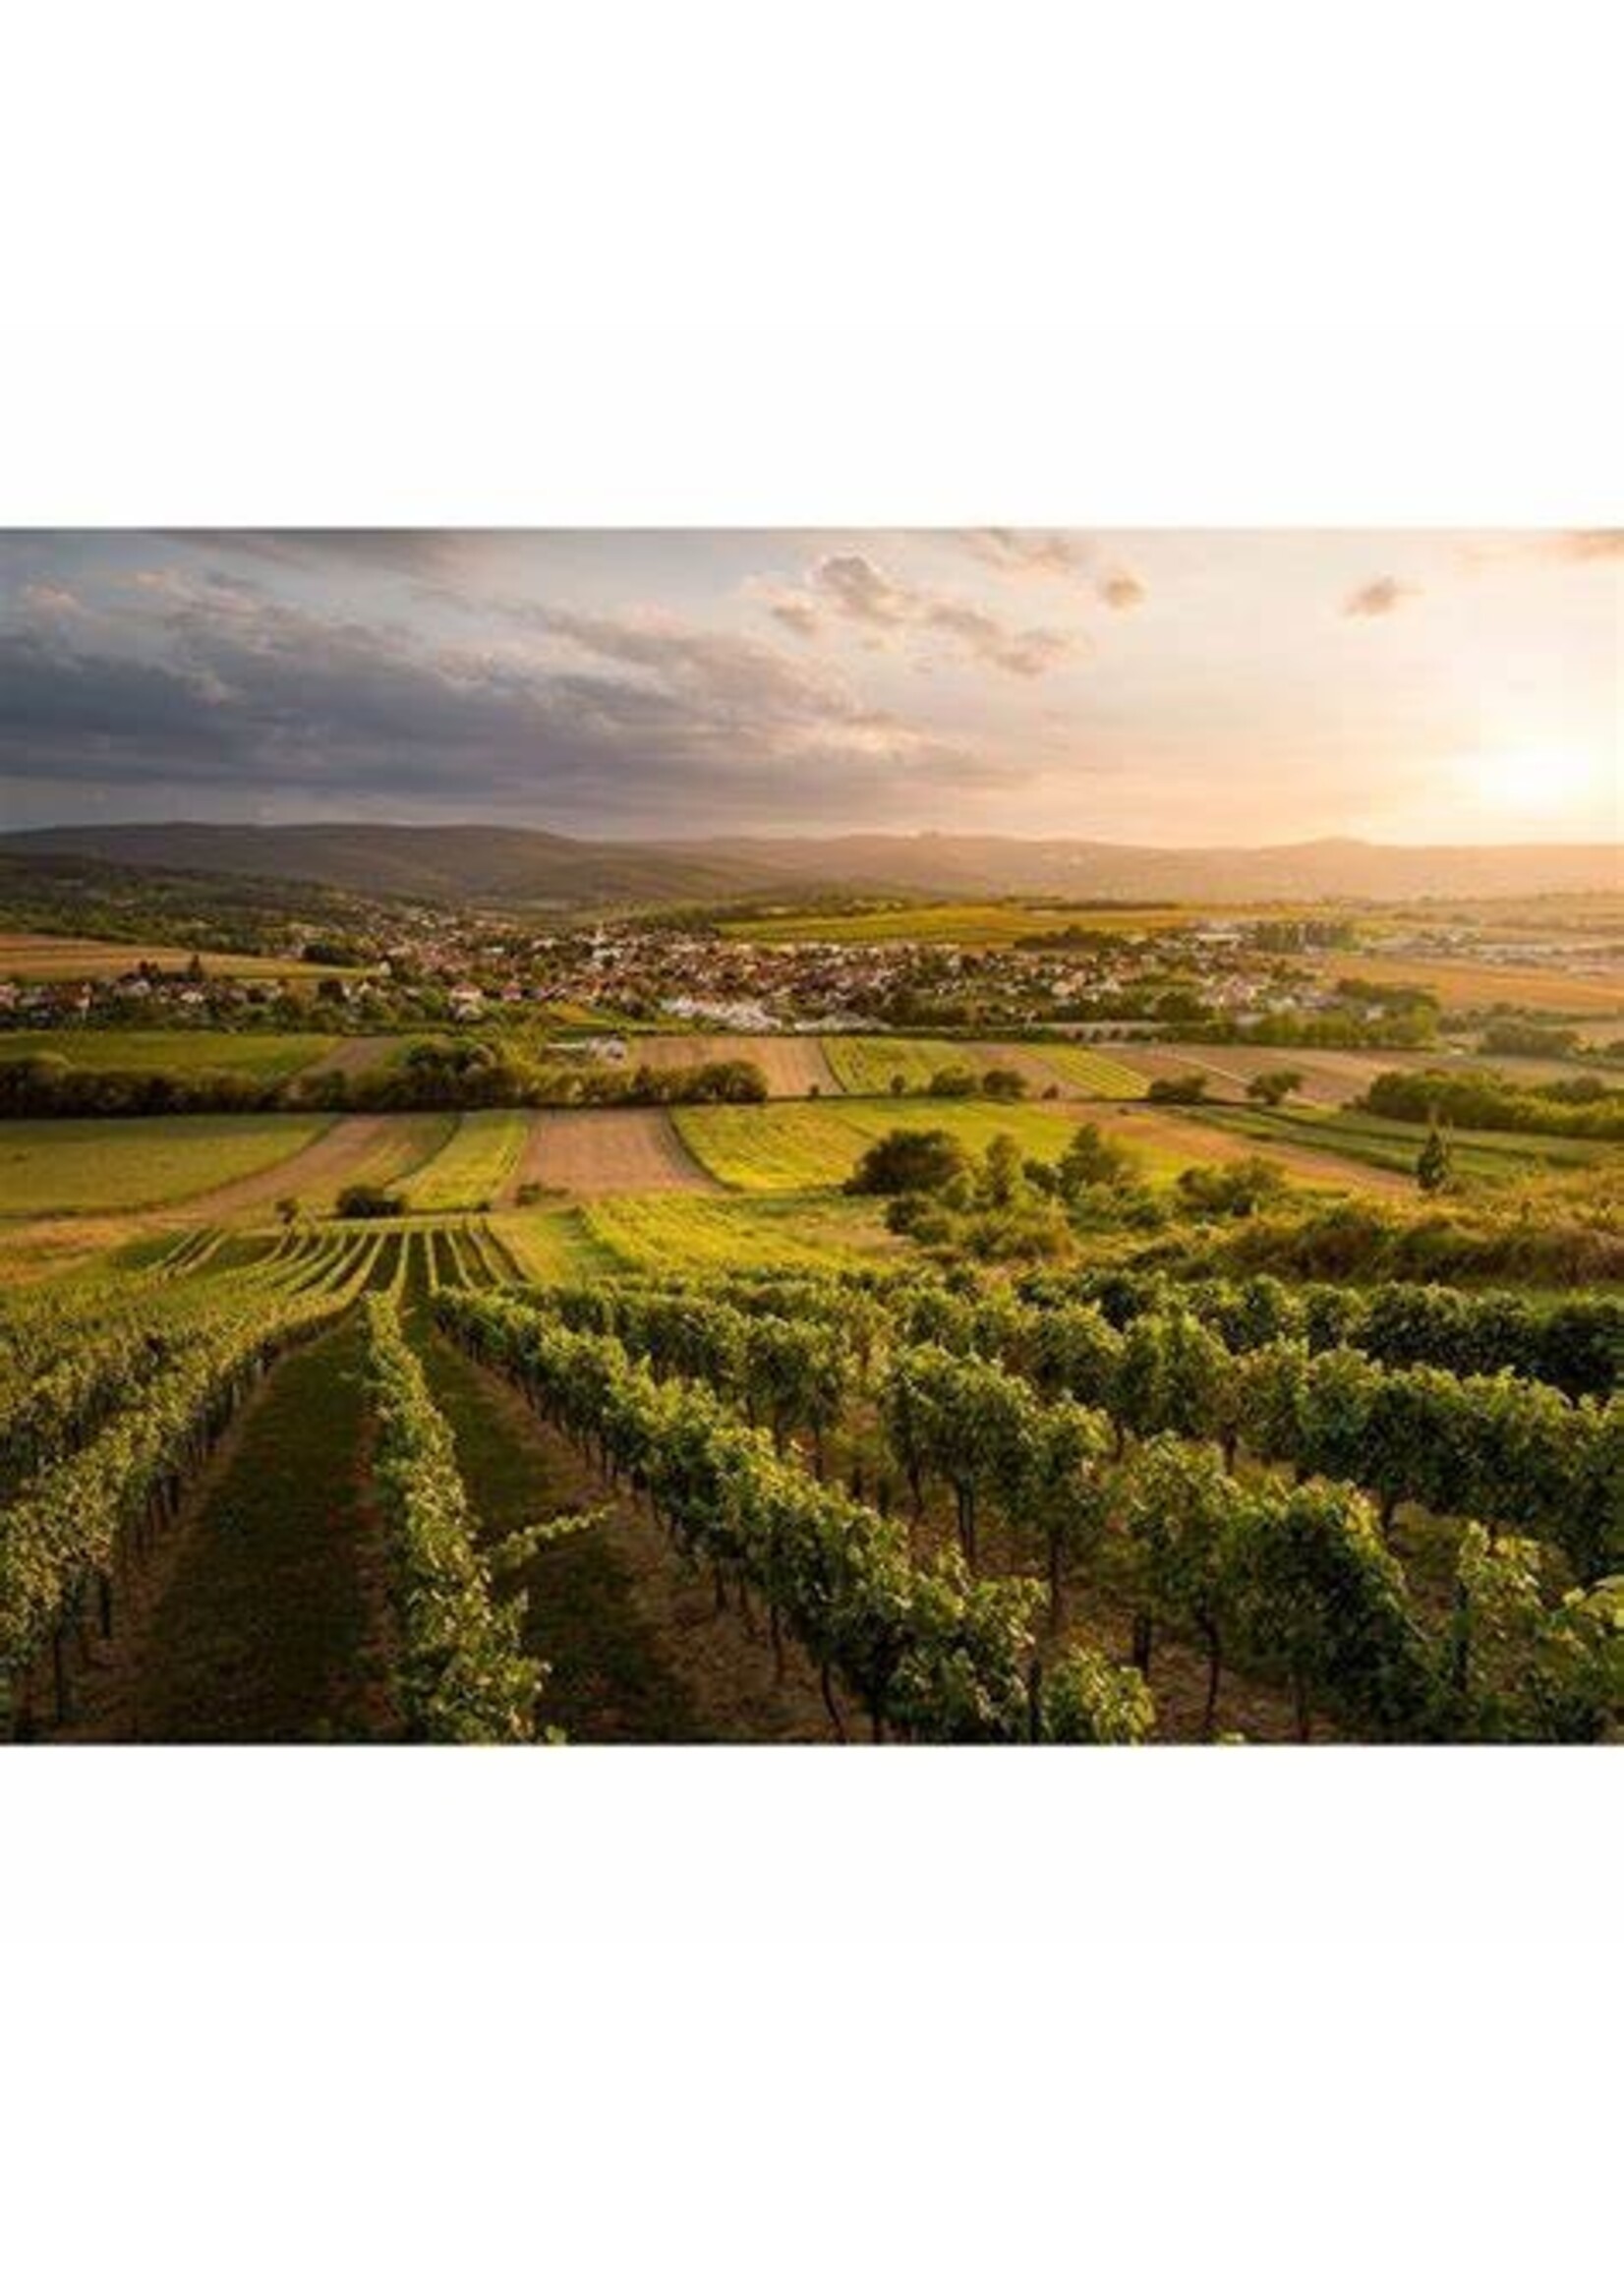 Chardonnay, Weingut Migsich, Burgenland